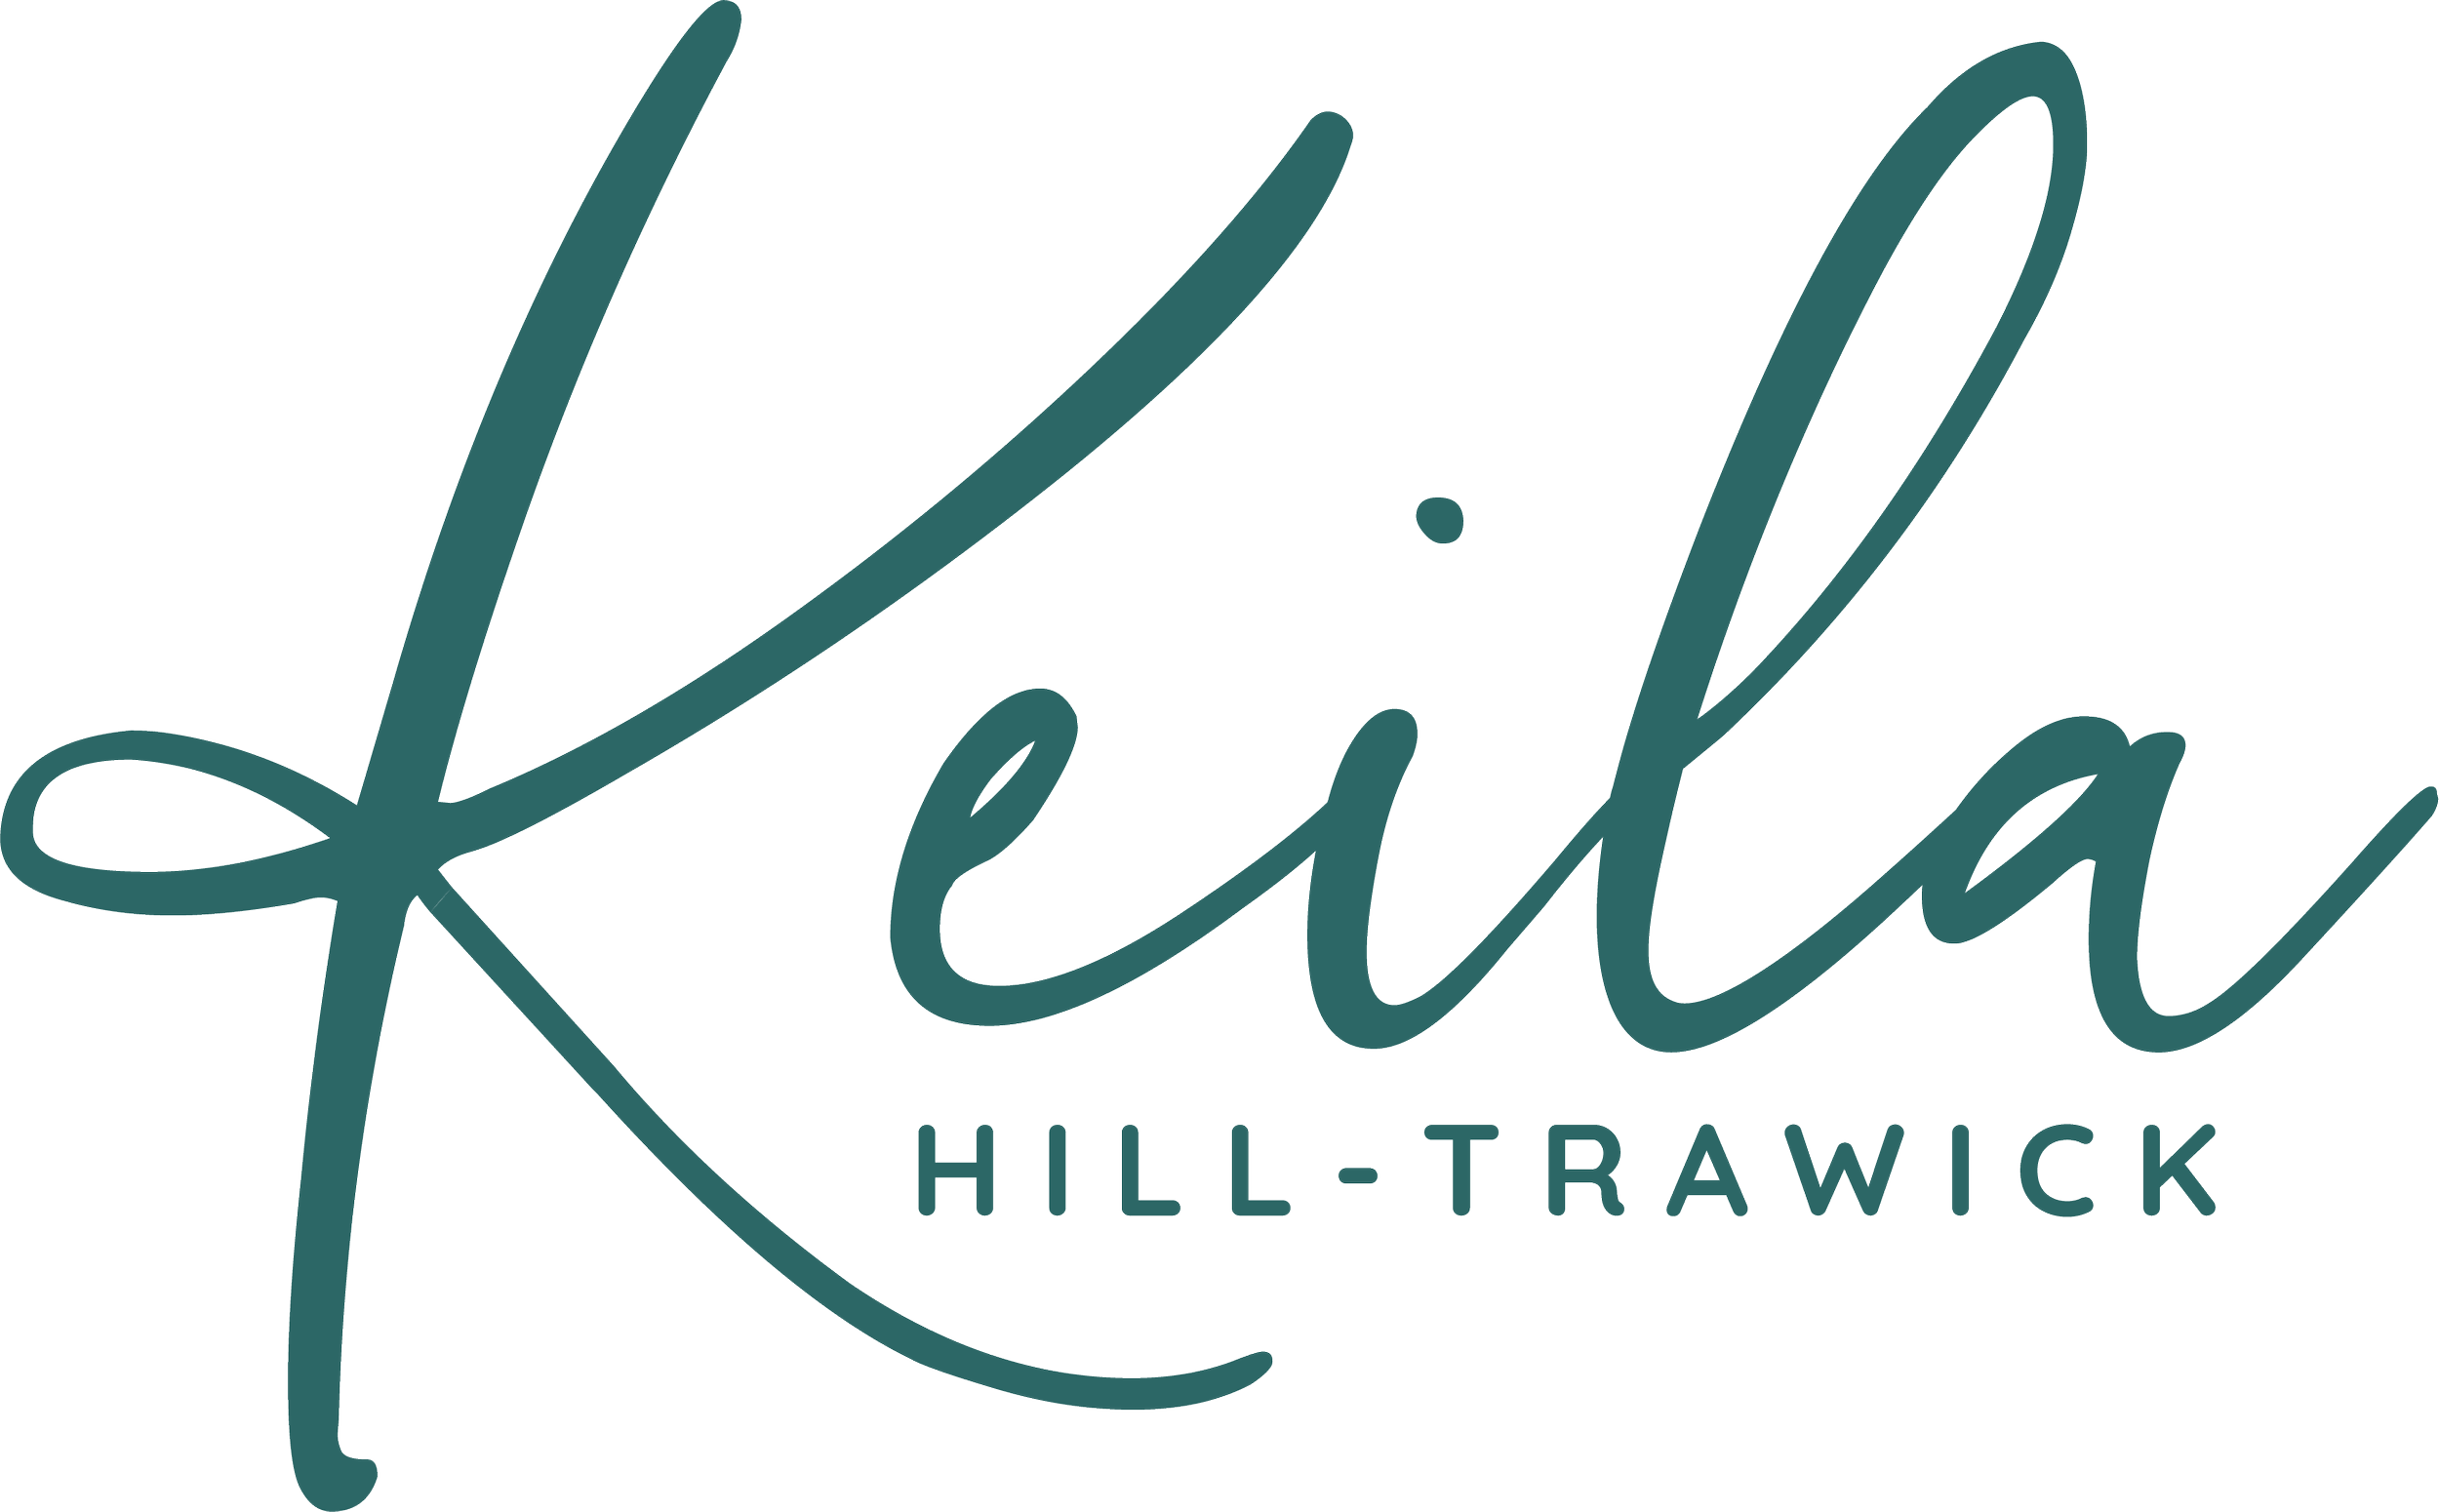 Keila Hill-Trawick